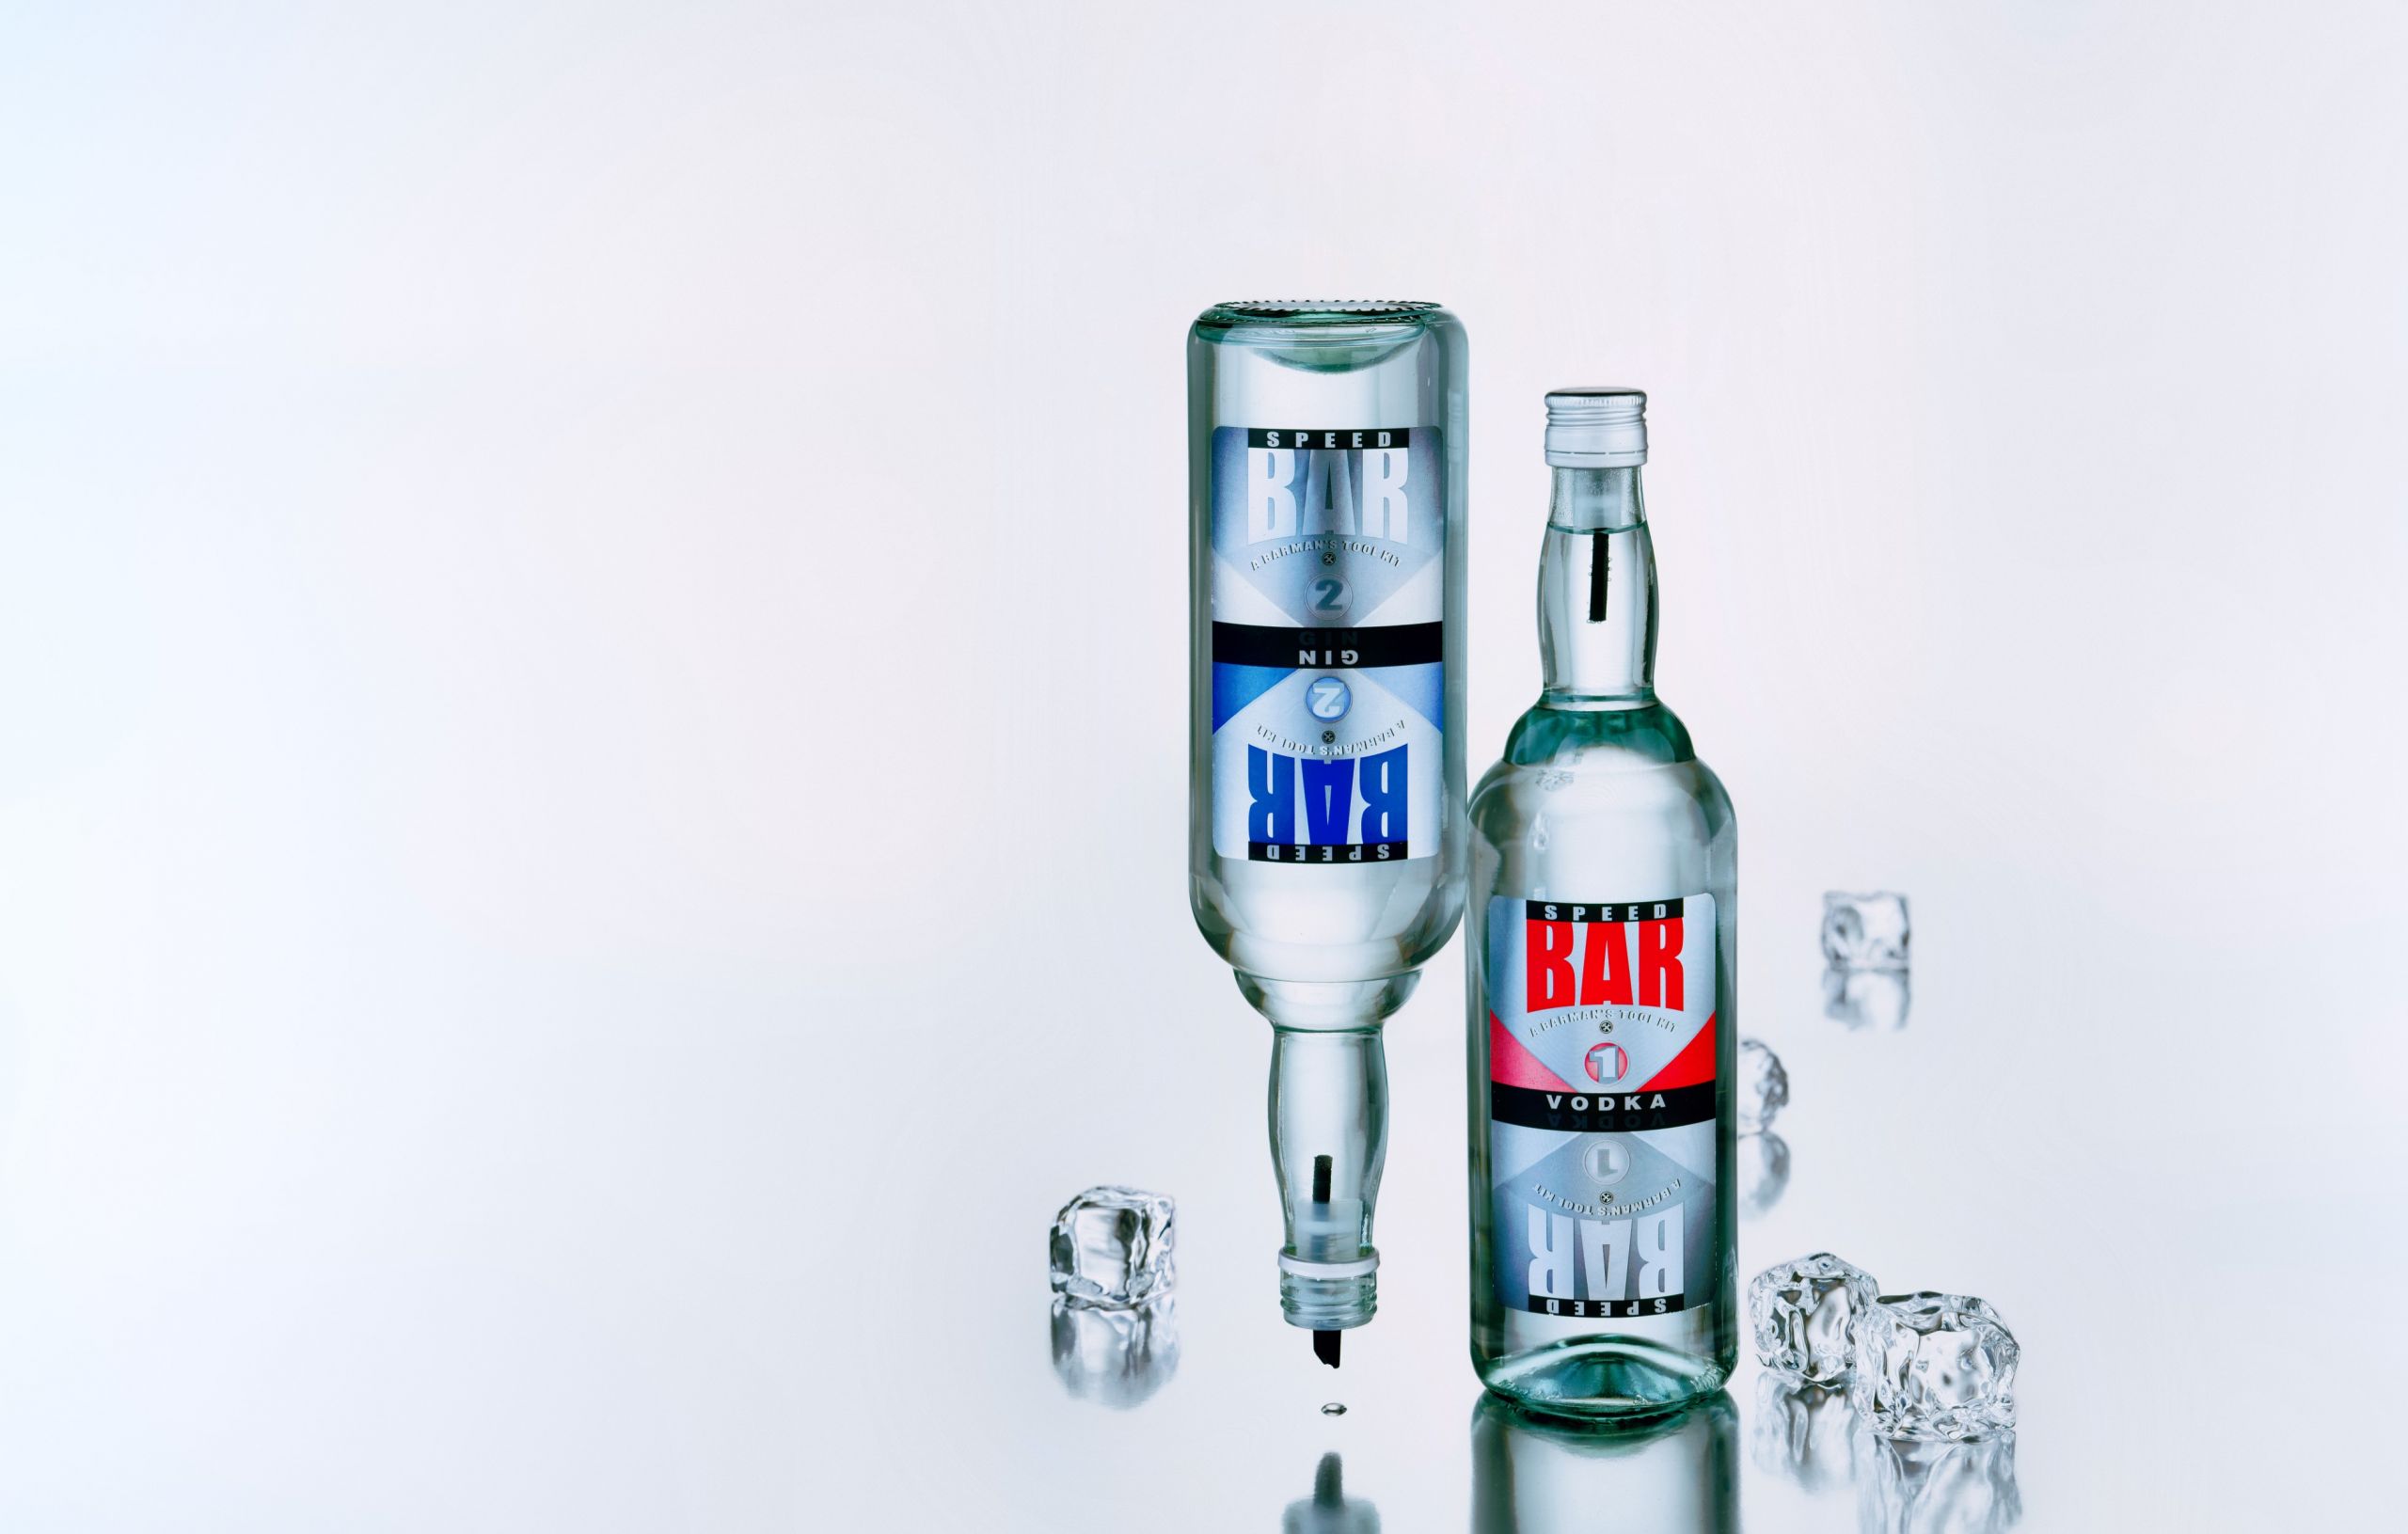 בקבוקי ודקה ג'ין לבר על רקע אפור משתקף בהיר עם קוביות קרח צילום סטודיו רייס צלמים